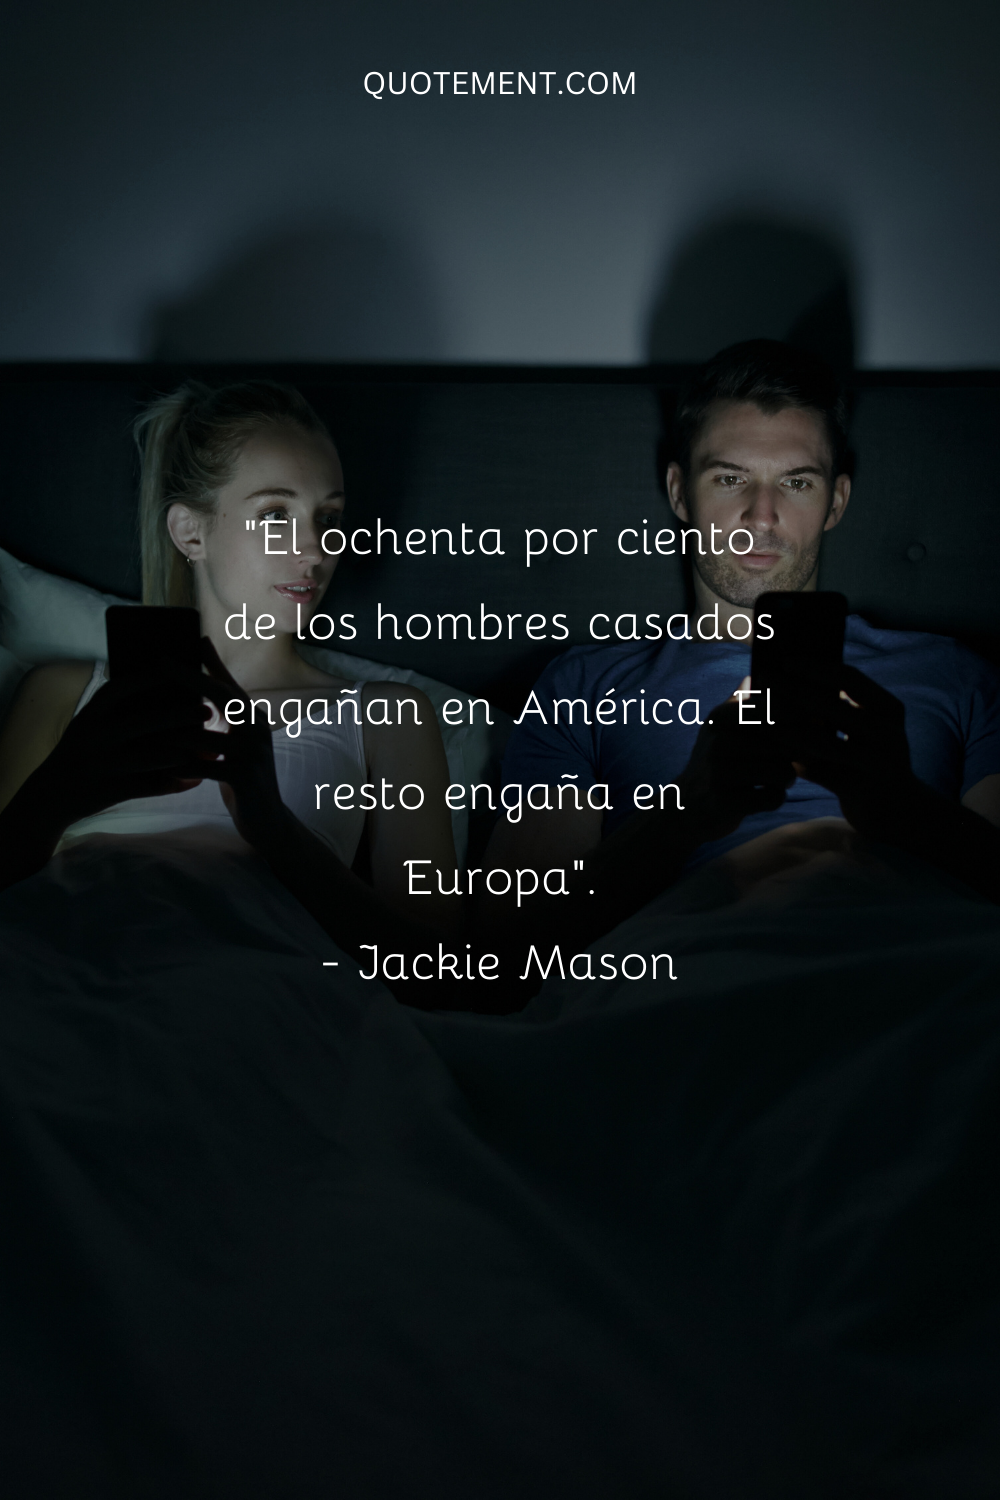 "El ochenta por ciento de los hombres casados engañan en América. El resto engaña en Europa". - Jackie Mason